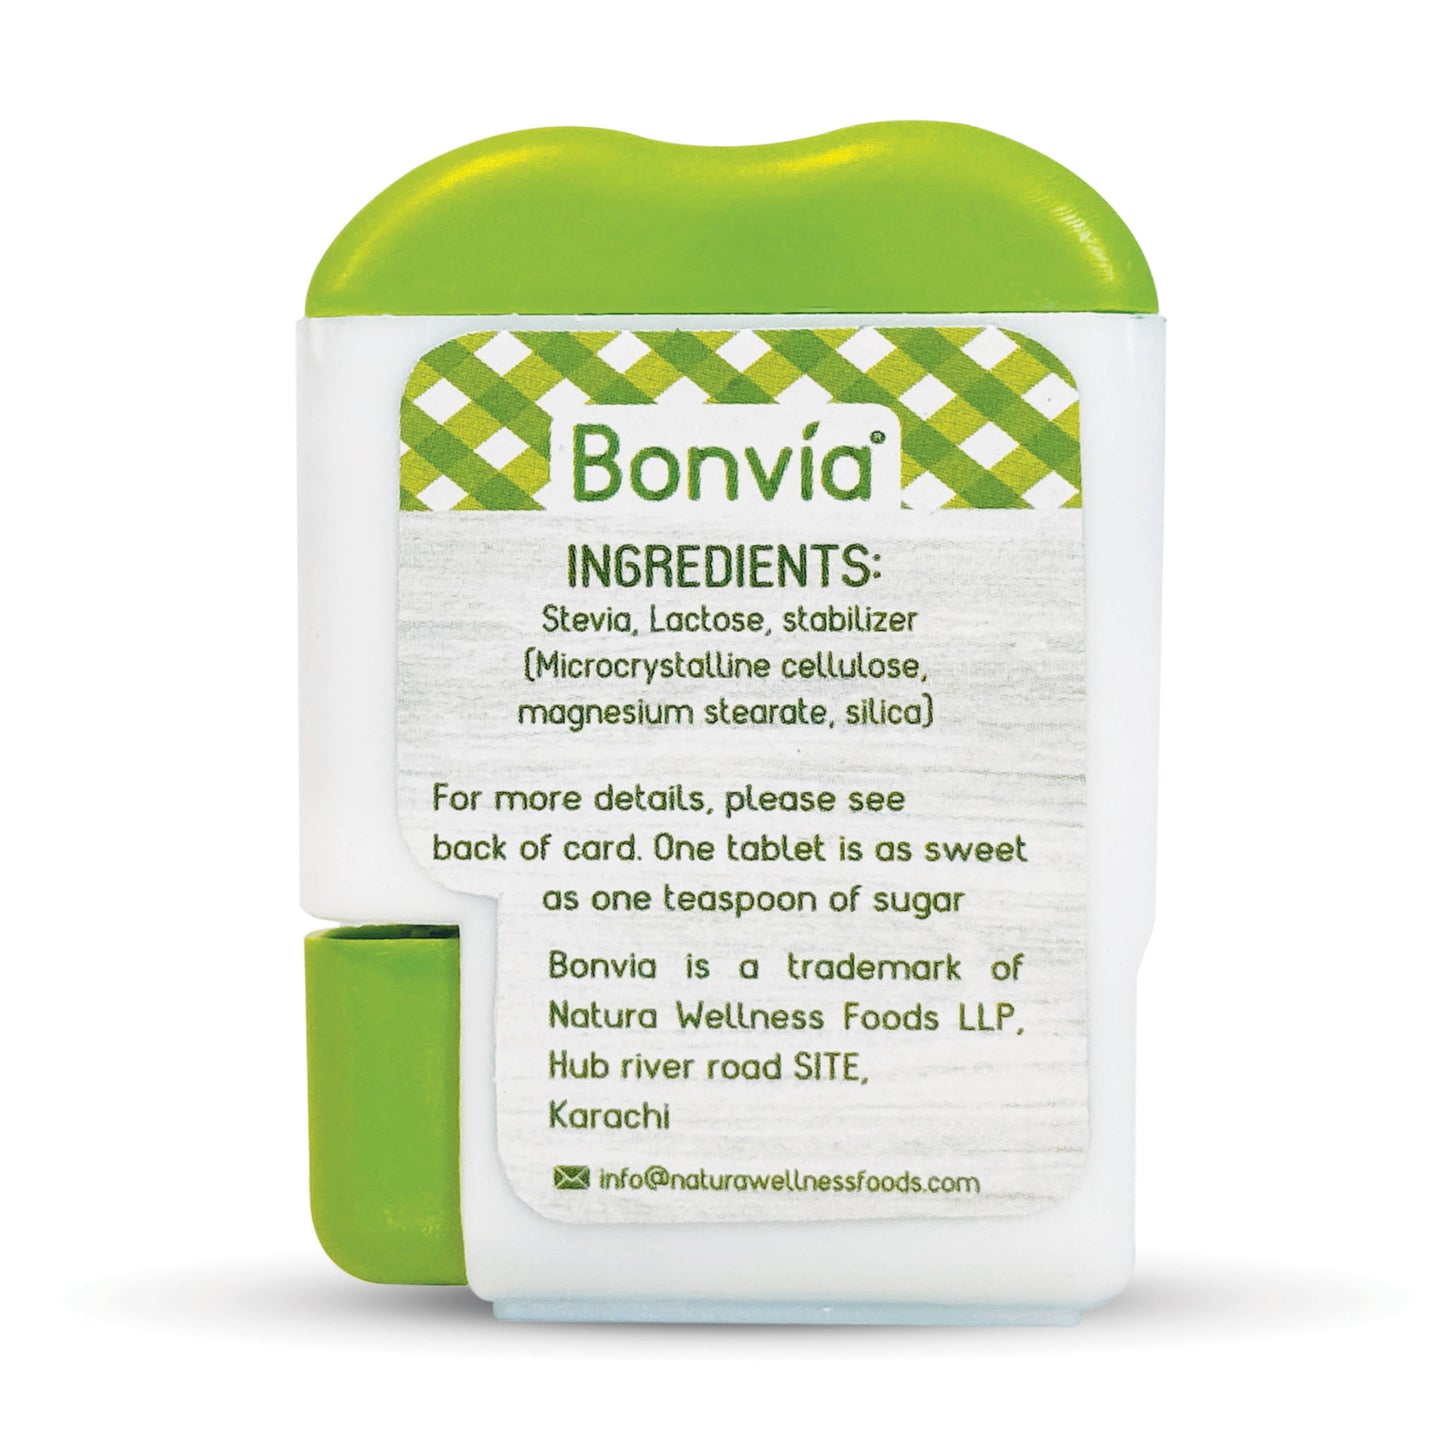 Bonvia Stevia Tablets - 100s Test